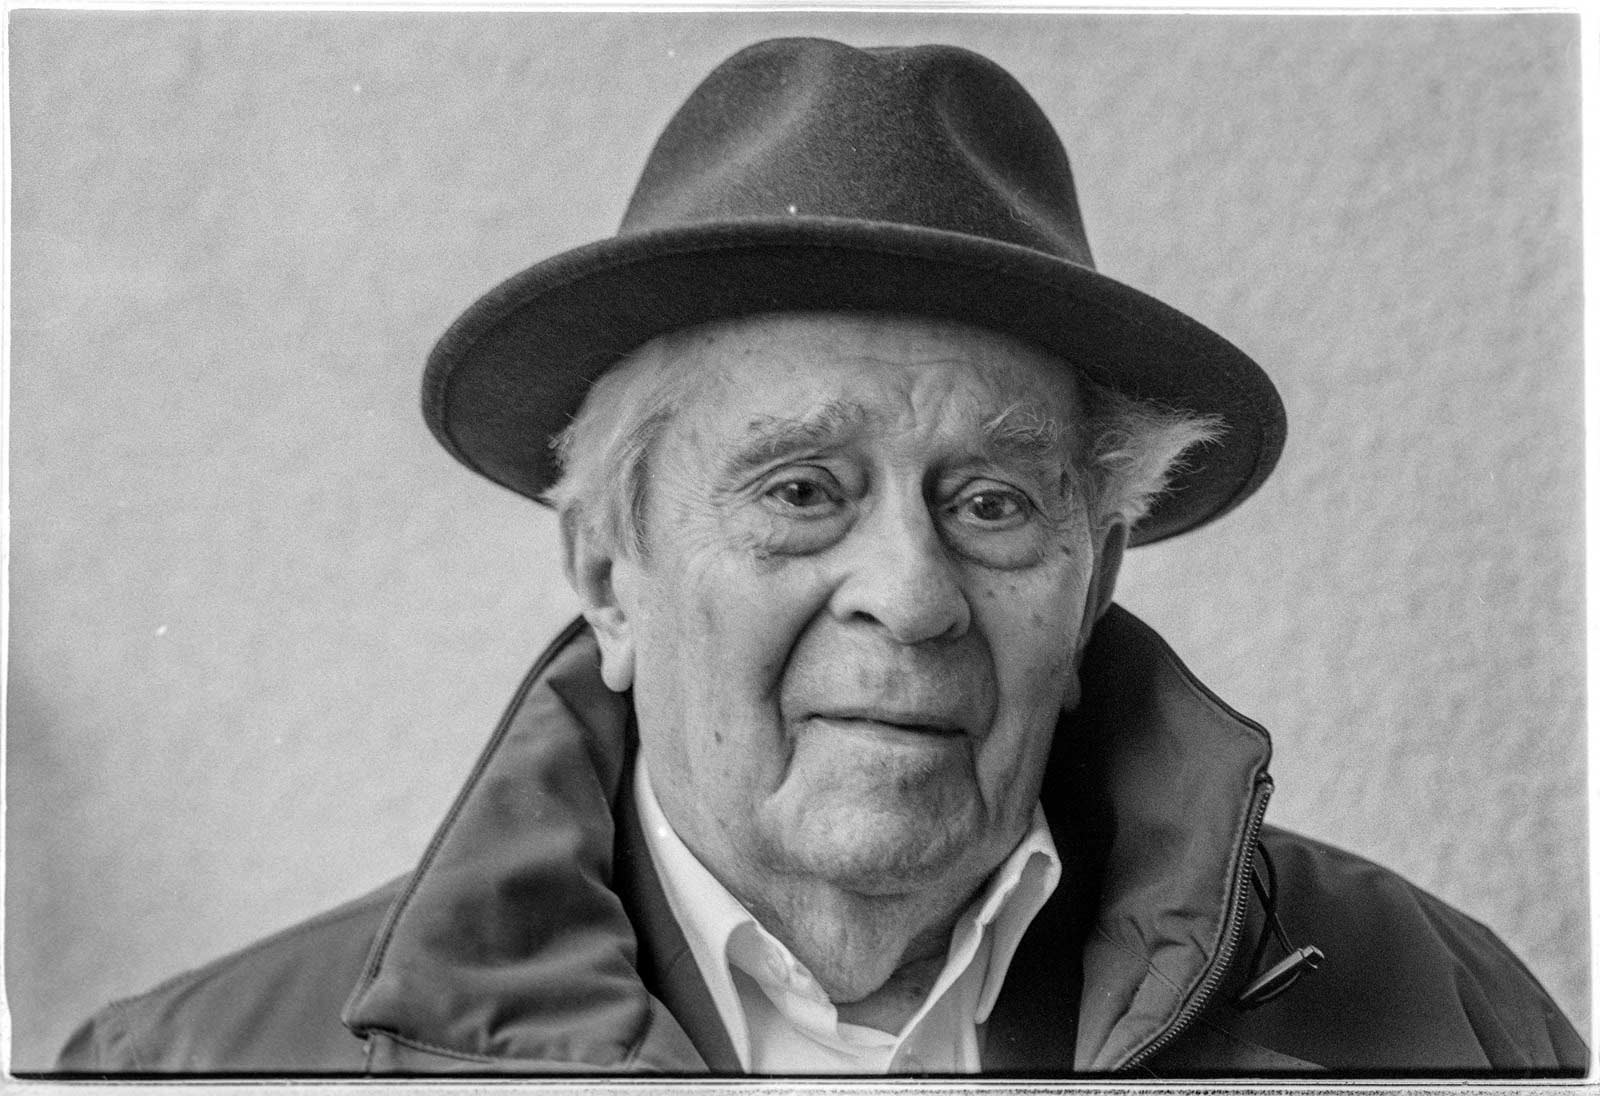 Fotografii portret ale jurnalistului Mircea Carp la vârsta centenarului, realizate cu un aparat de fotografiat Leica M6 cu APO-summicron 90 mm., pe peliculă Ilford, 25 martie 2023 München. Credit foto: Octavian Bâlea.